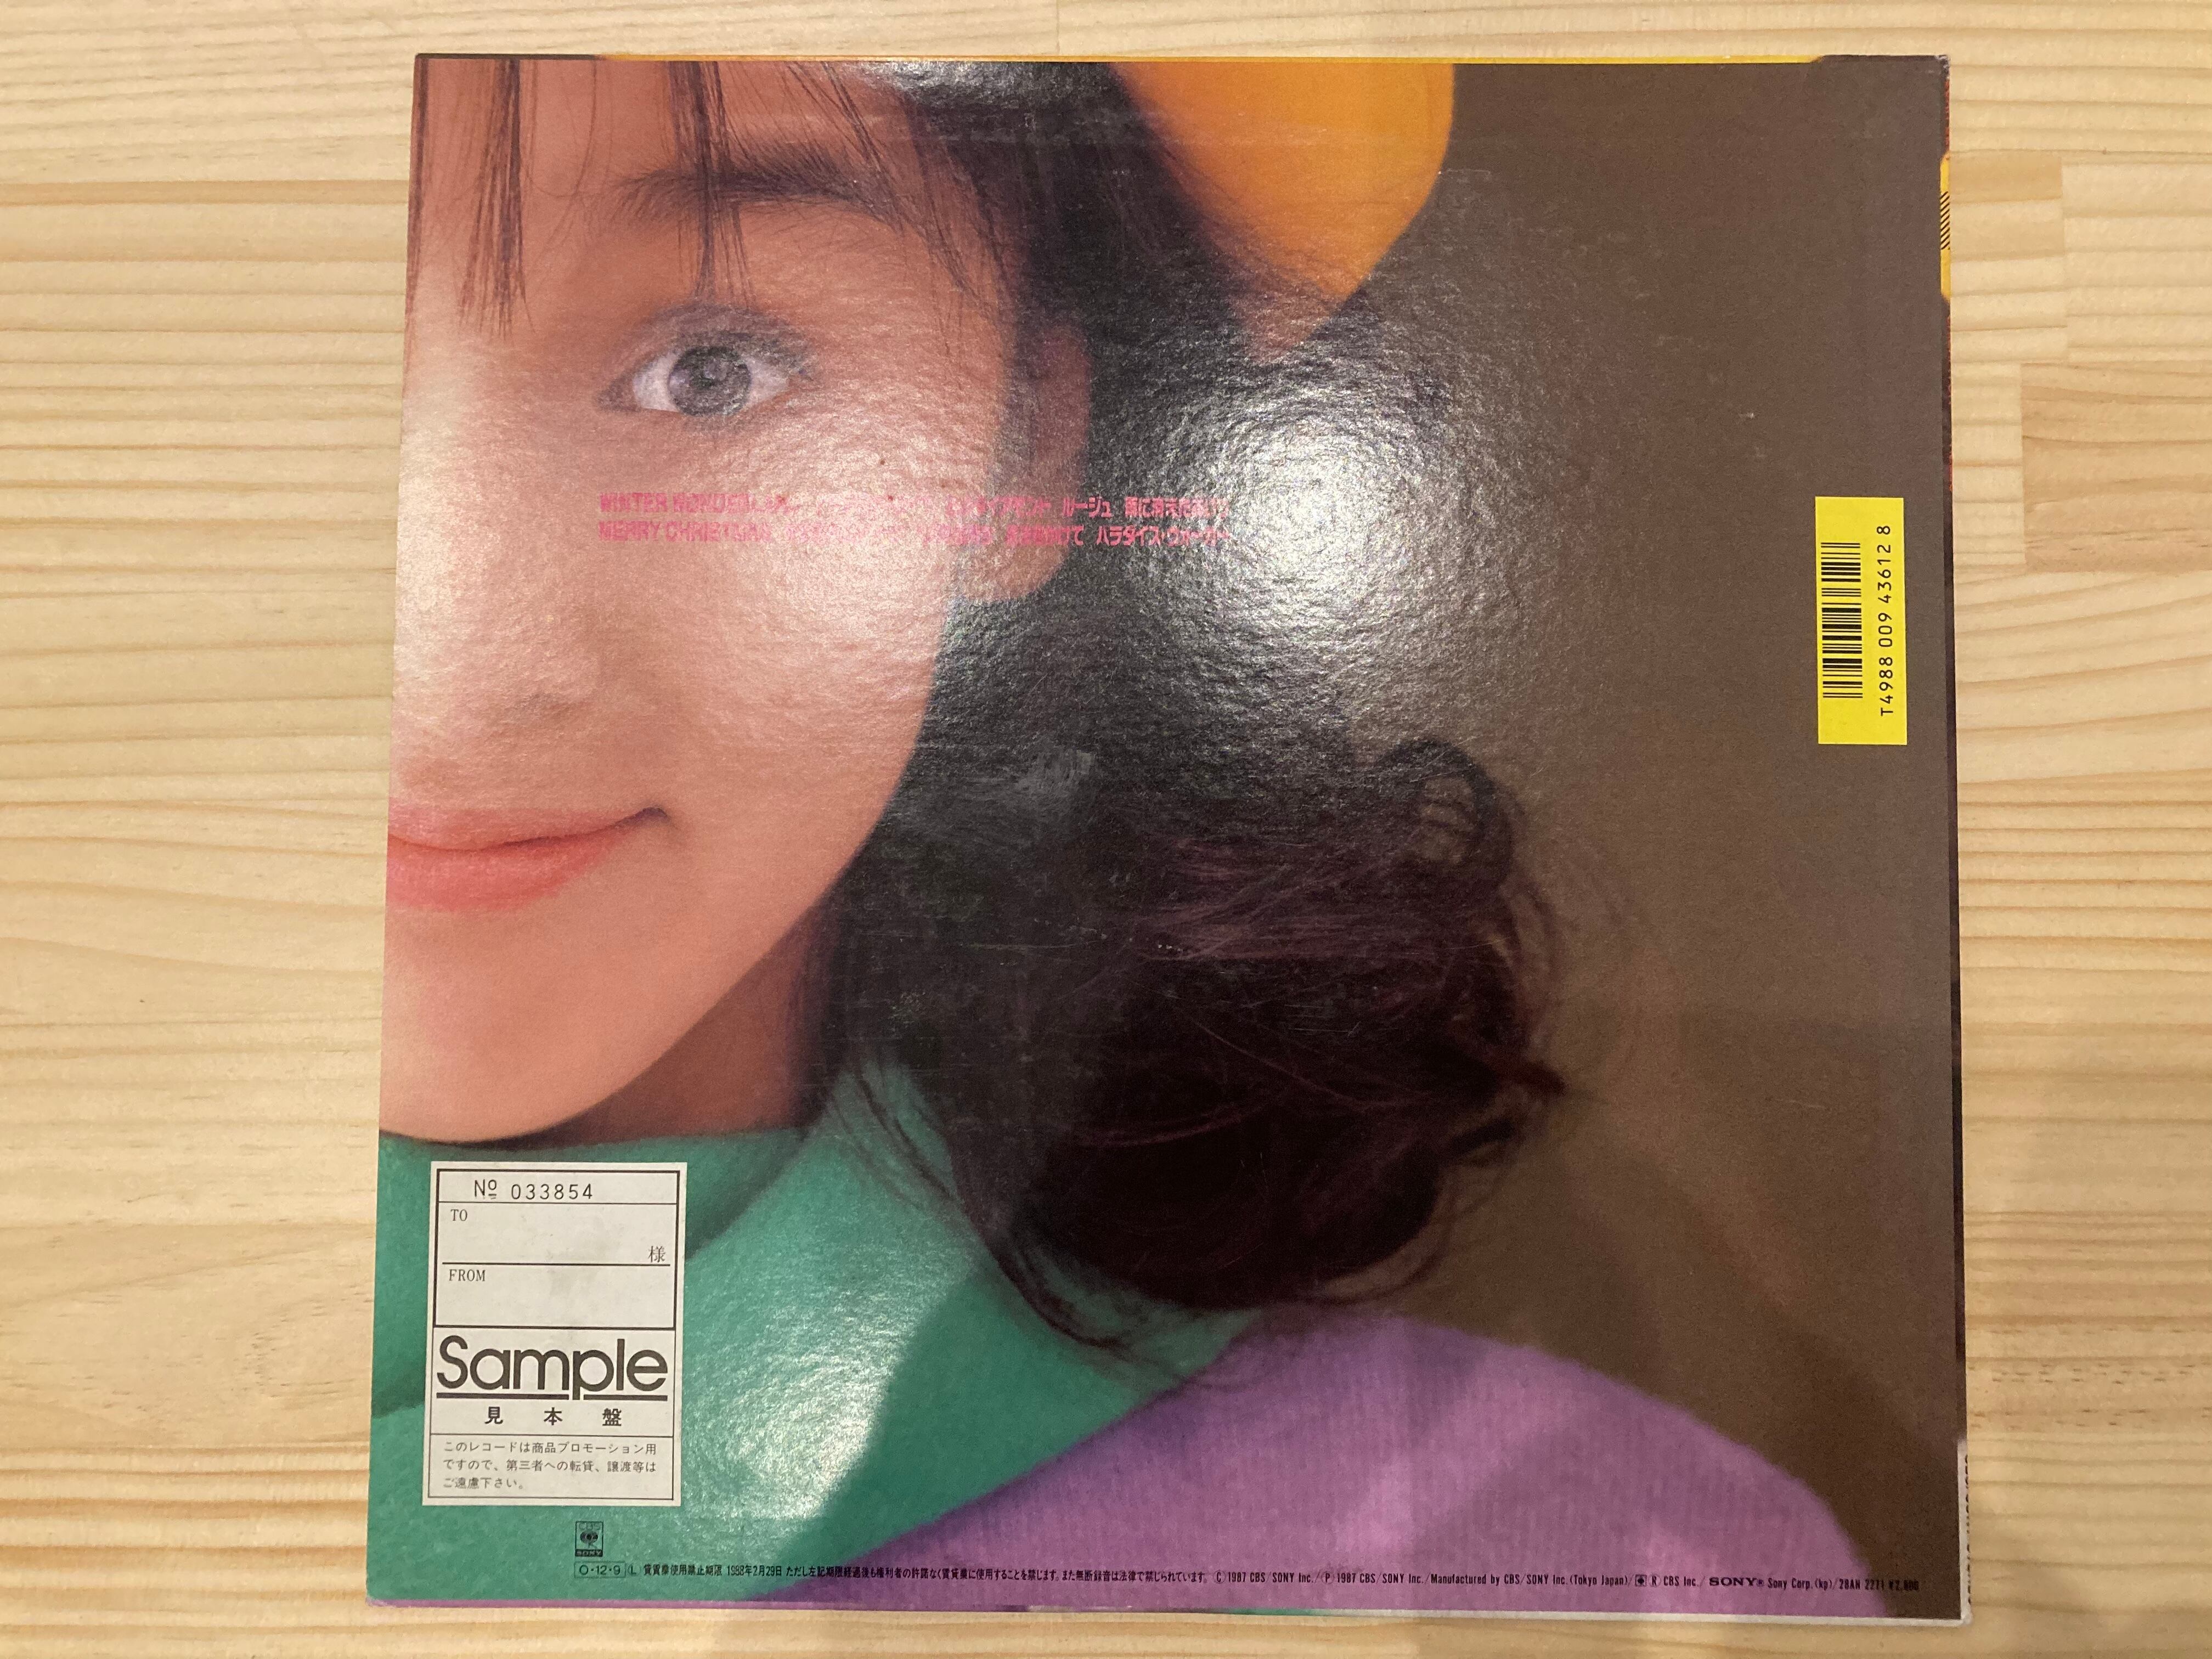 【新品】伊藤智恵理 ハロー CD/HELLO 80年代アイドル 名盤